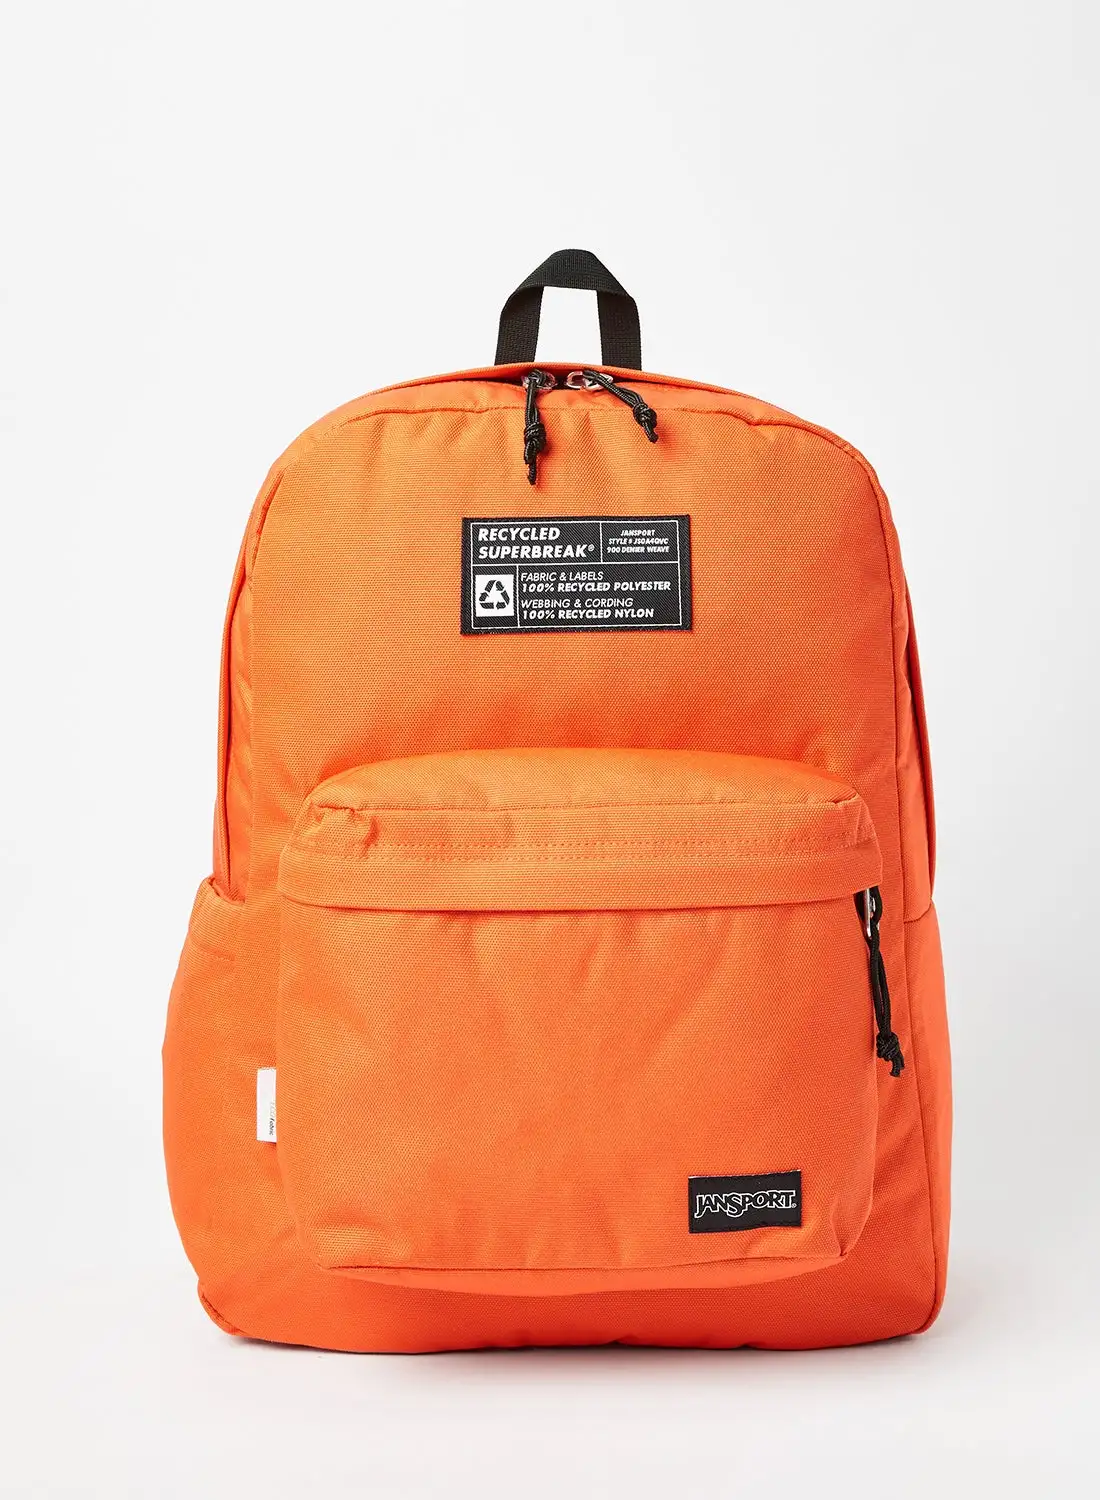 JANSPORT Recycled SuperBreak Backpack Orange